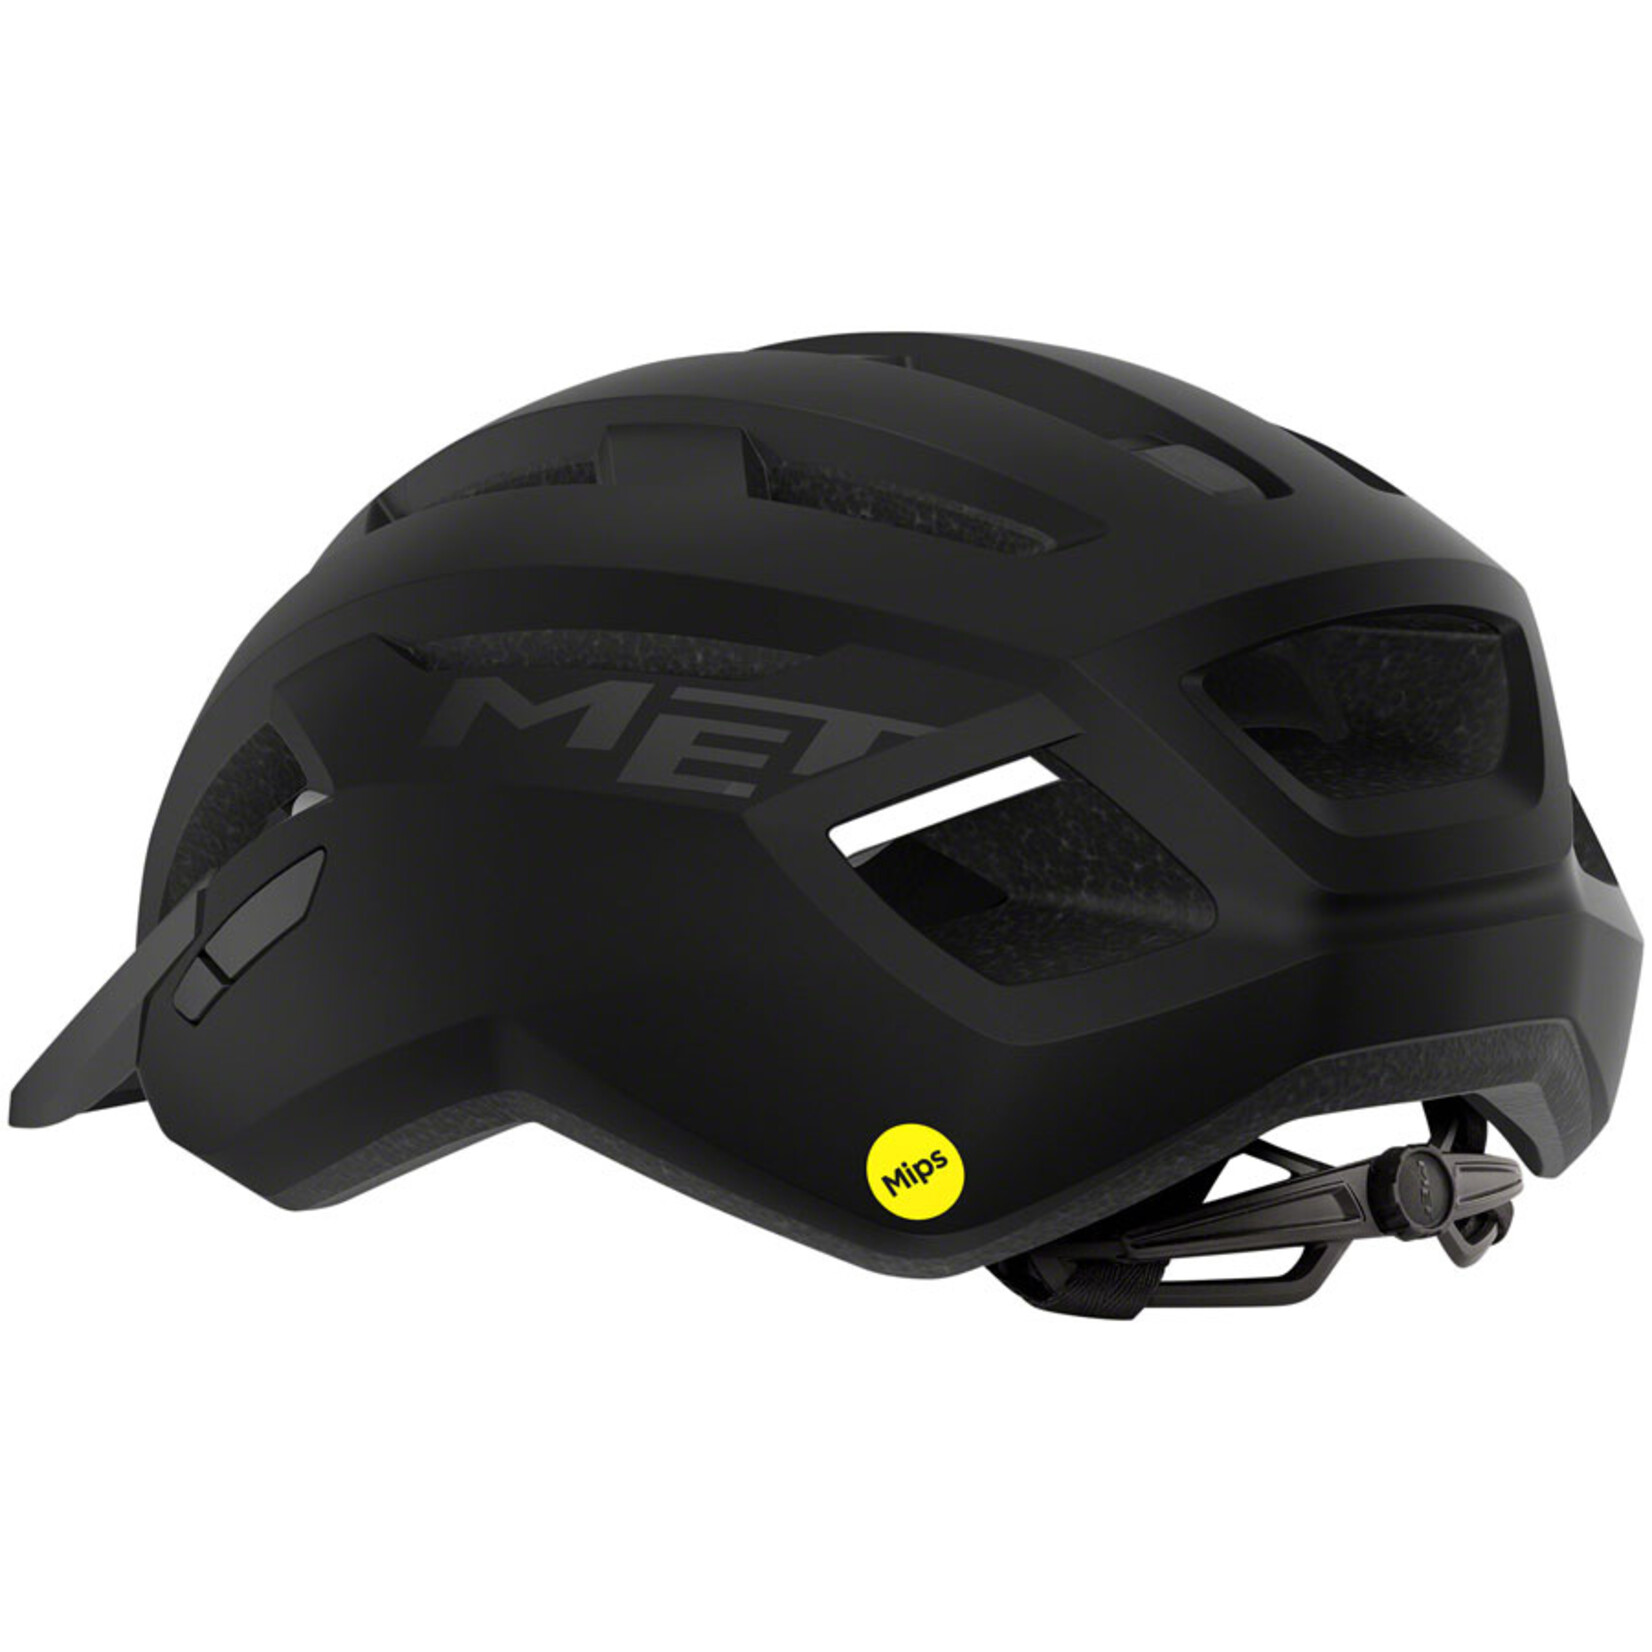 MET Helmets MET Allroad MIPS Helmet - Black, Matte, Large